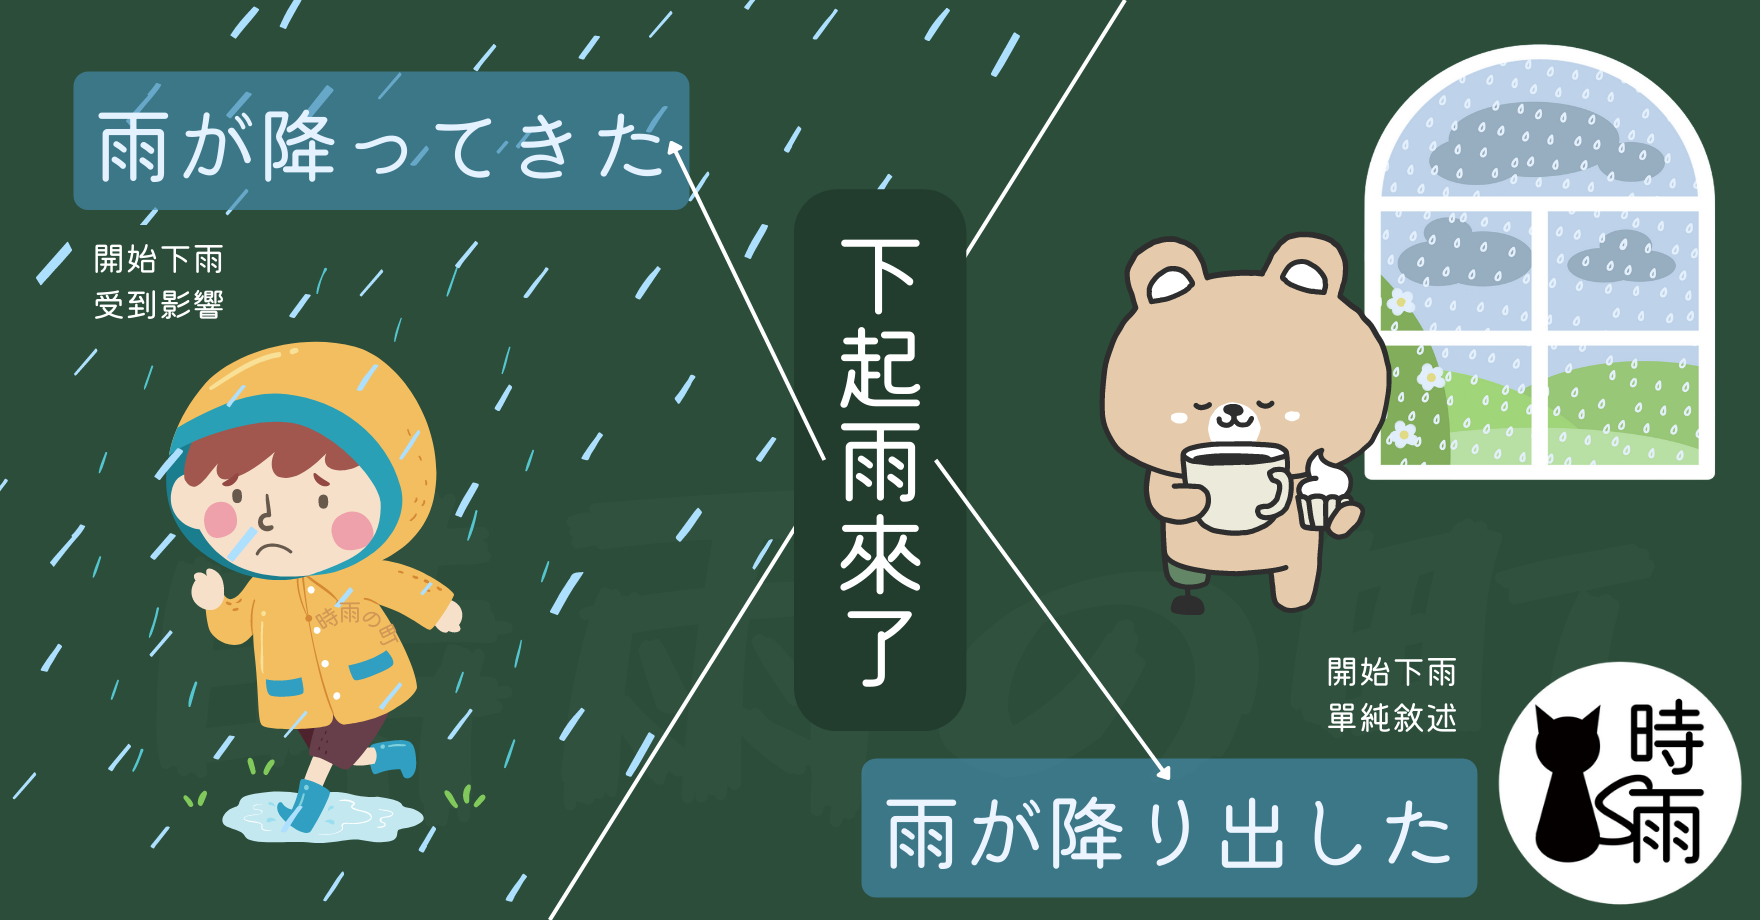 下起雨來的日文：降ってきた／降り出した